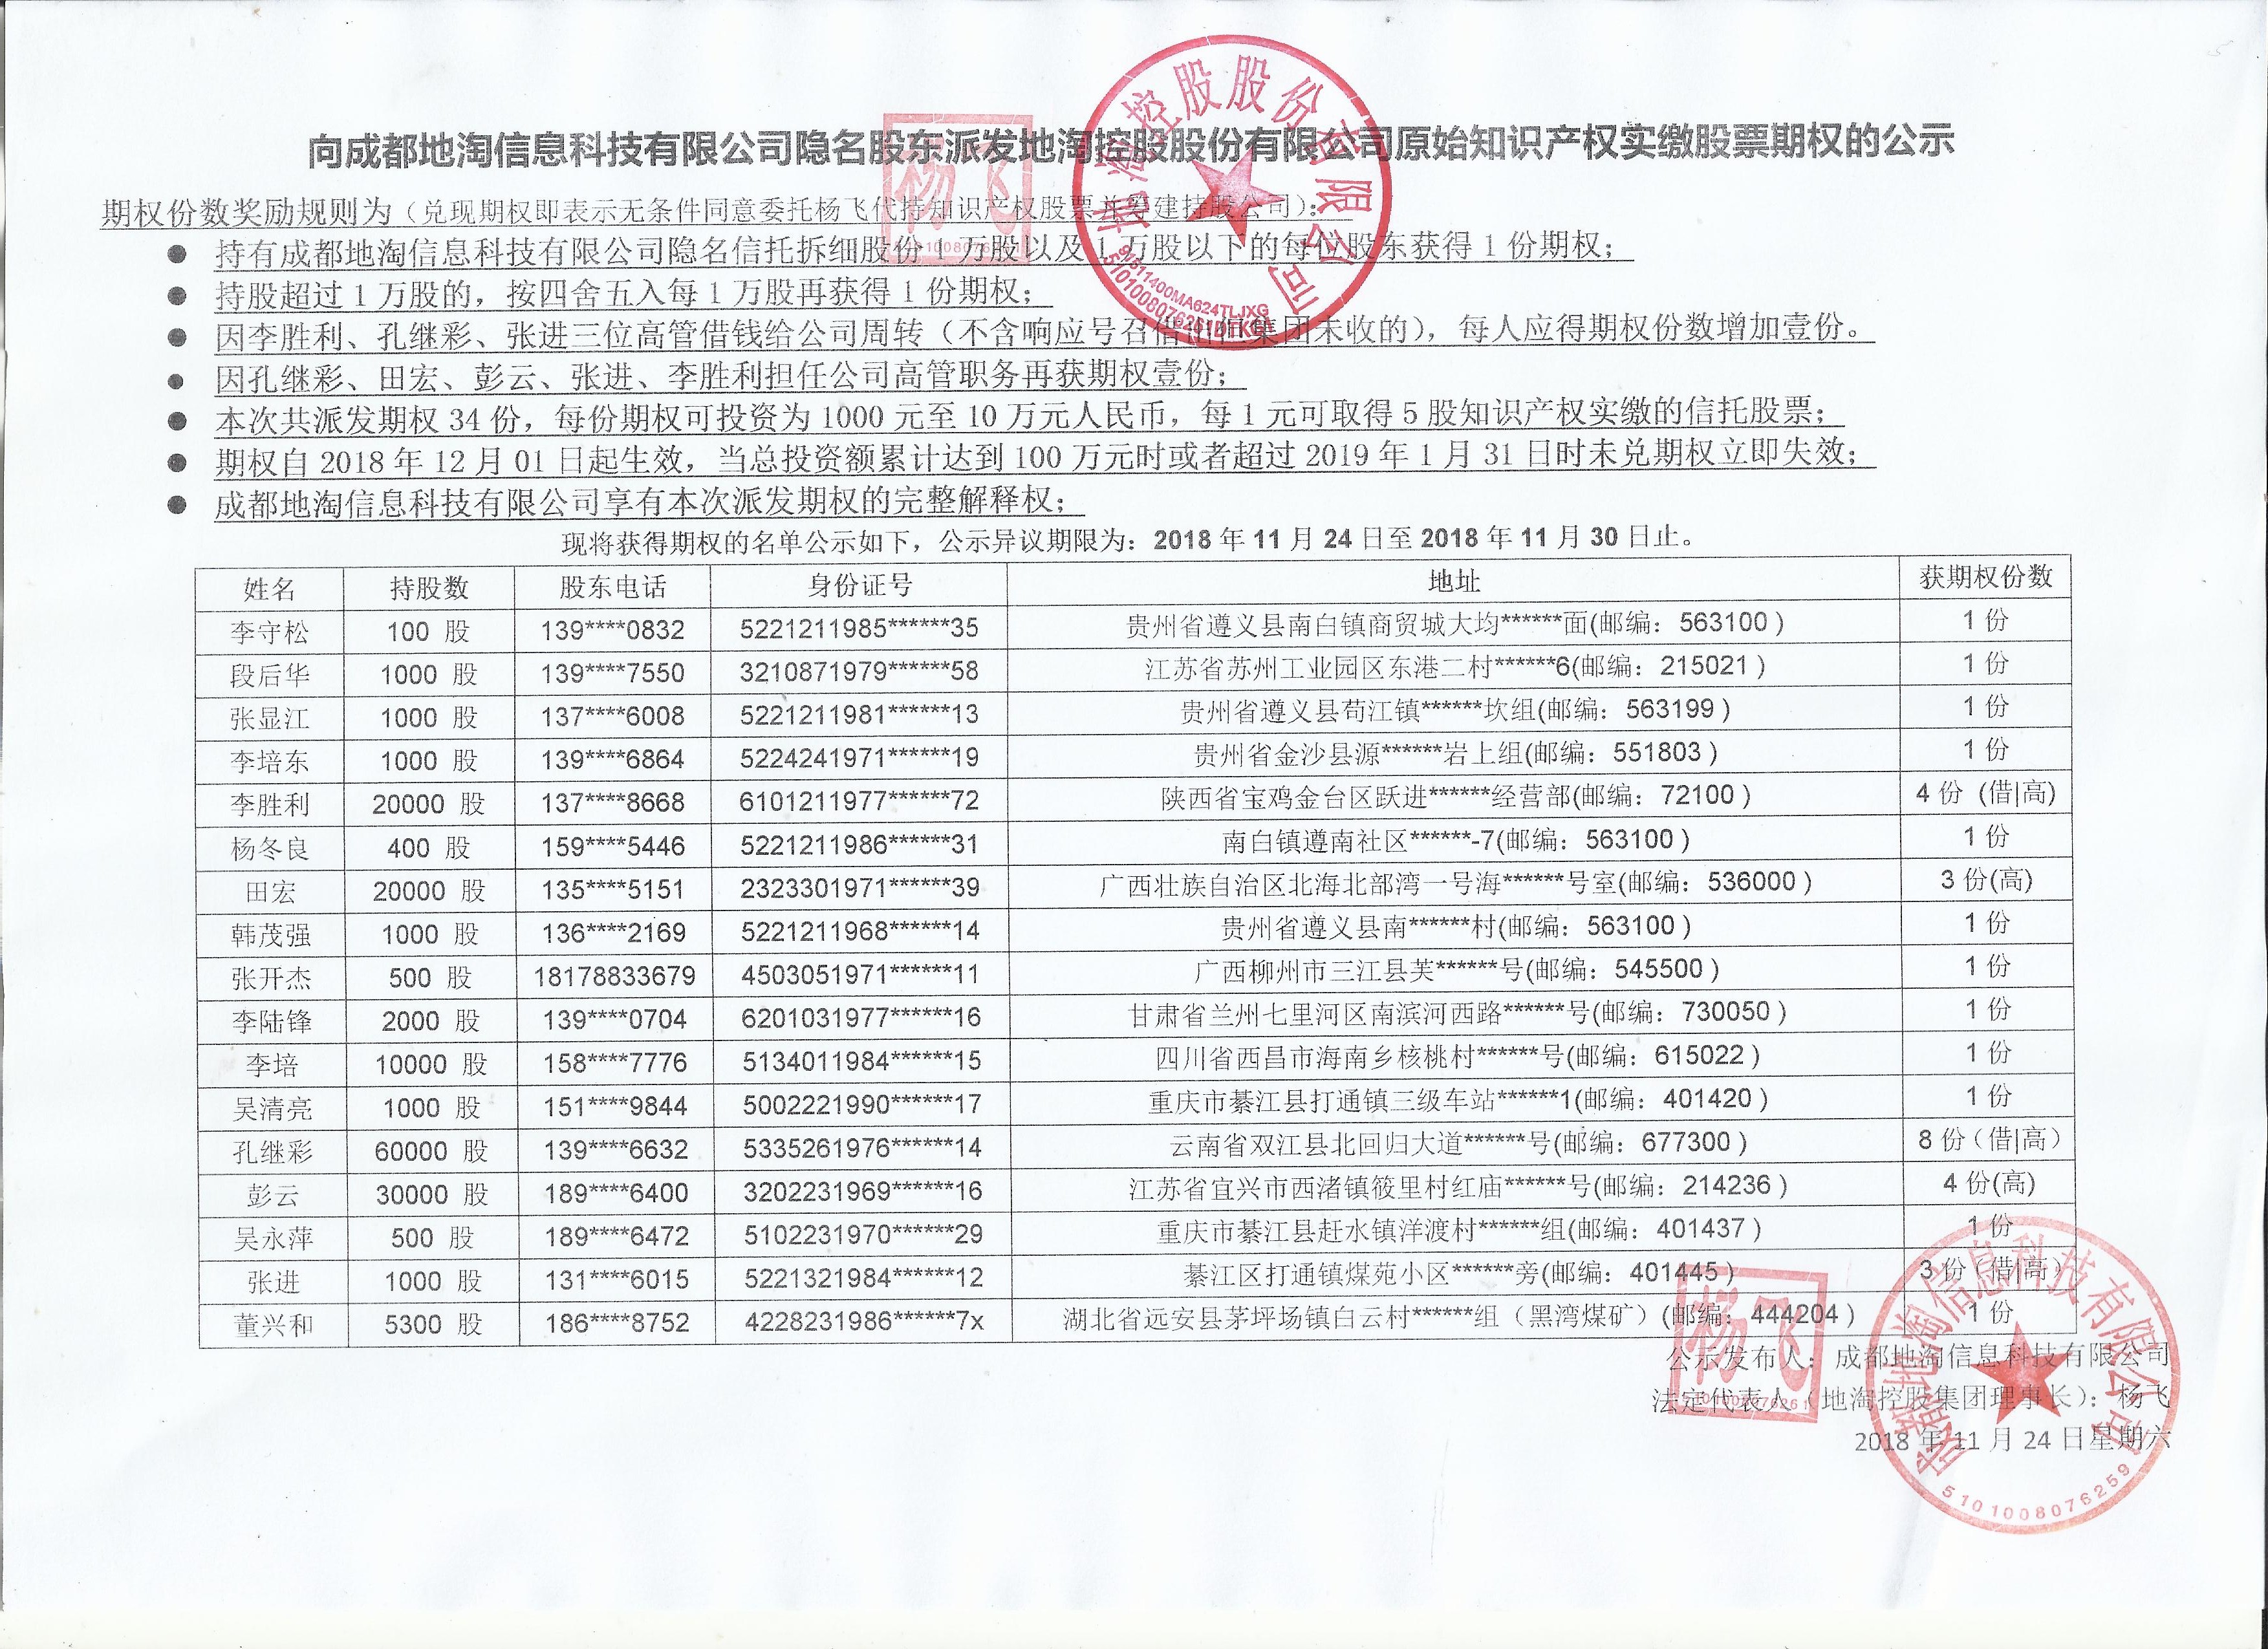 地淘控股集团原始知识产权股票的期权派发的股东名单公示